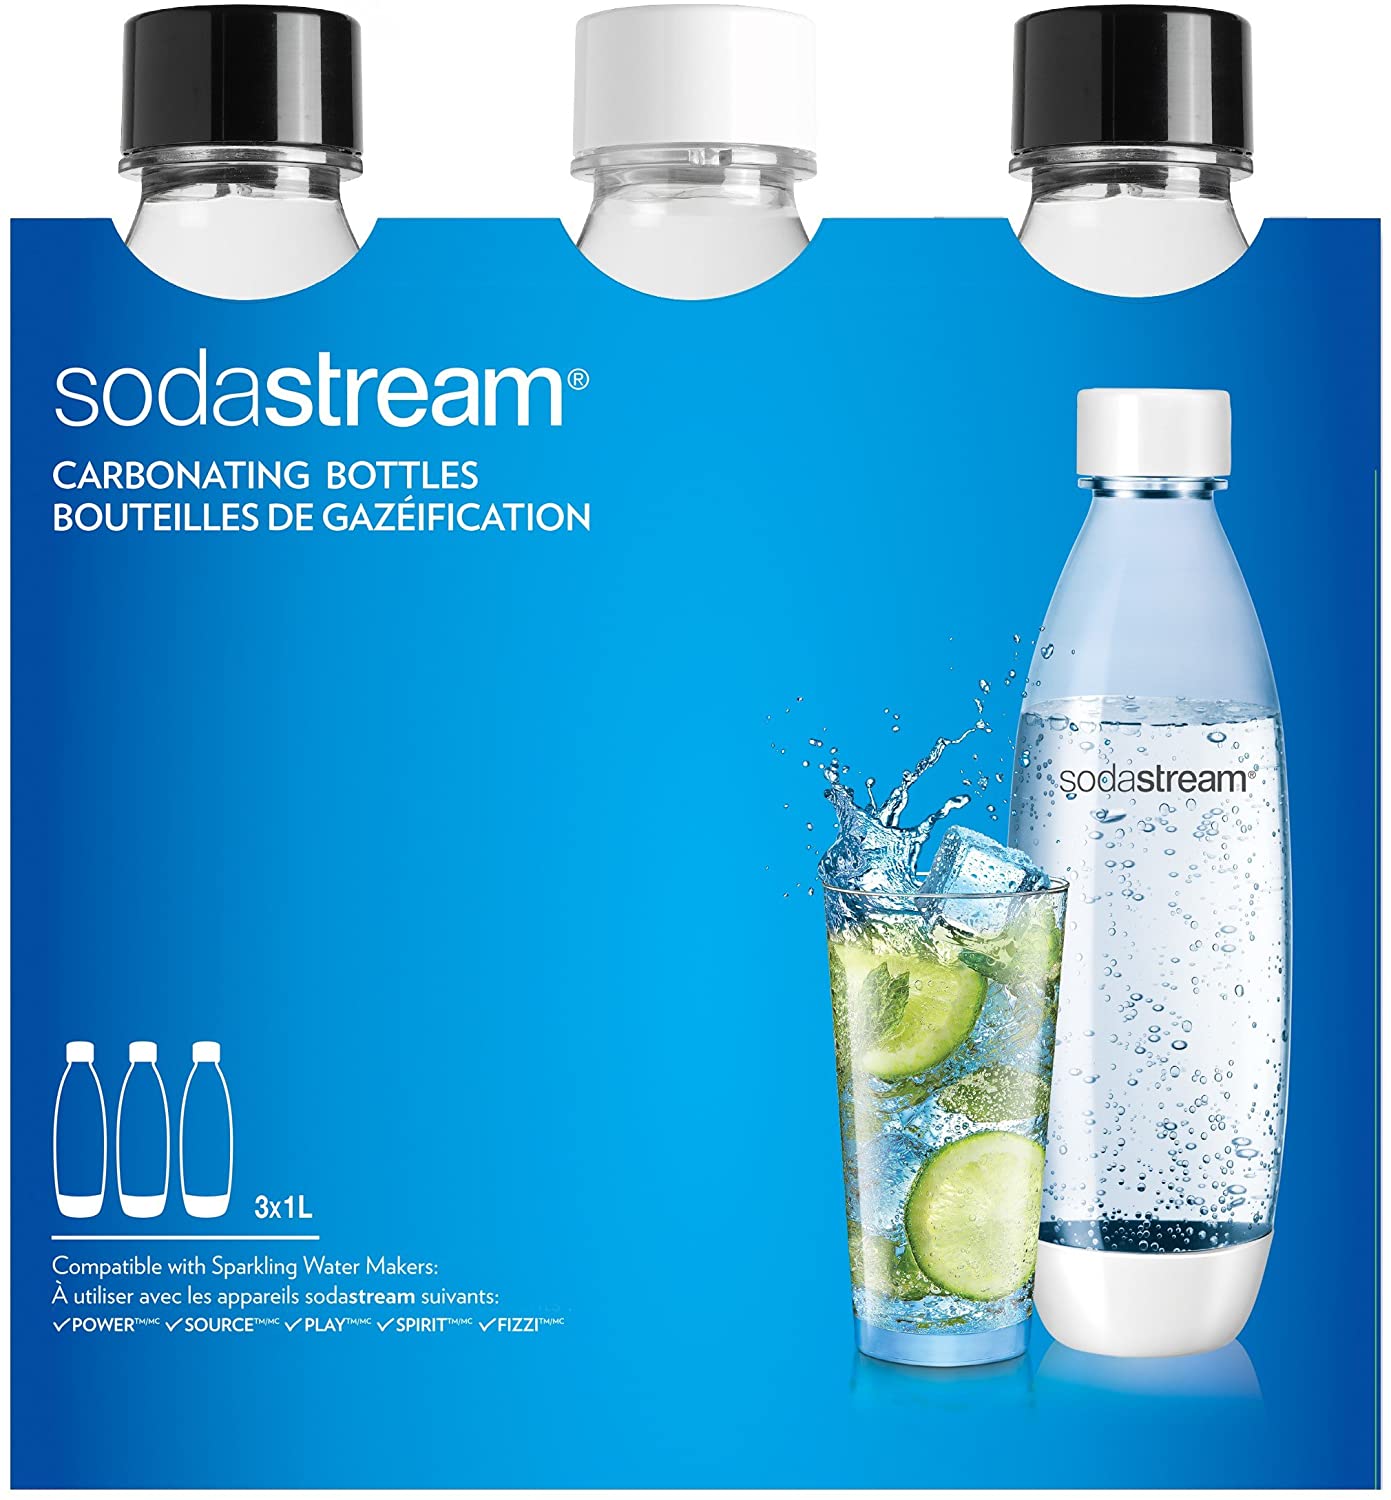 SodaStream 3 Bottiglie per gasatore d'acqua, Capienza 1 litro, Modello Fuse, Compatibili con modelli Gasatore Source, Play, Power, Spirit, Fizzi